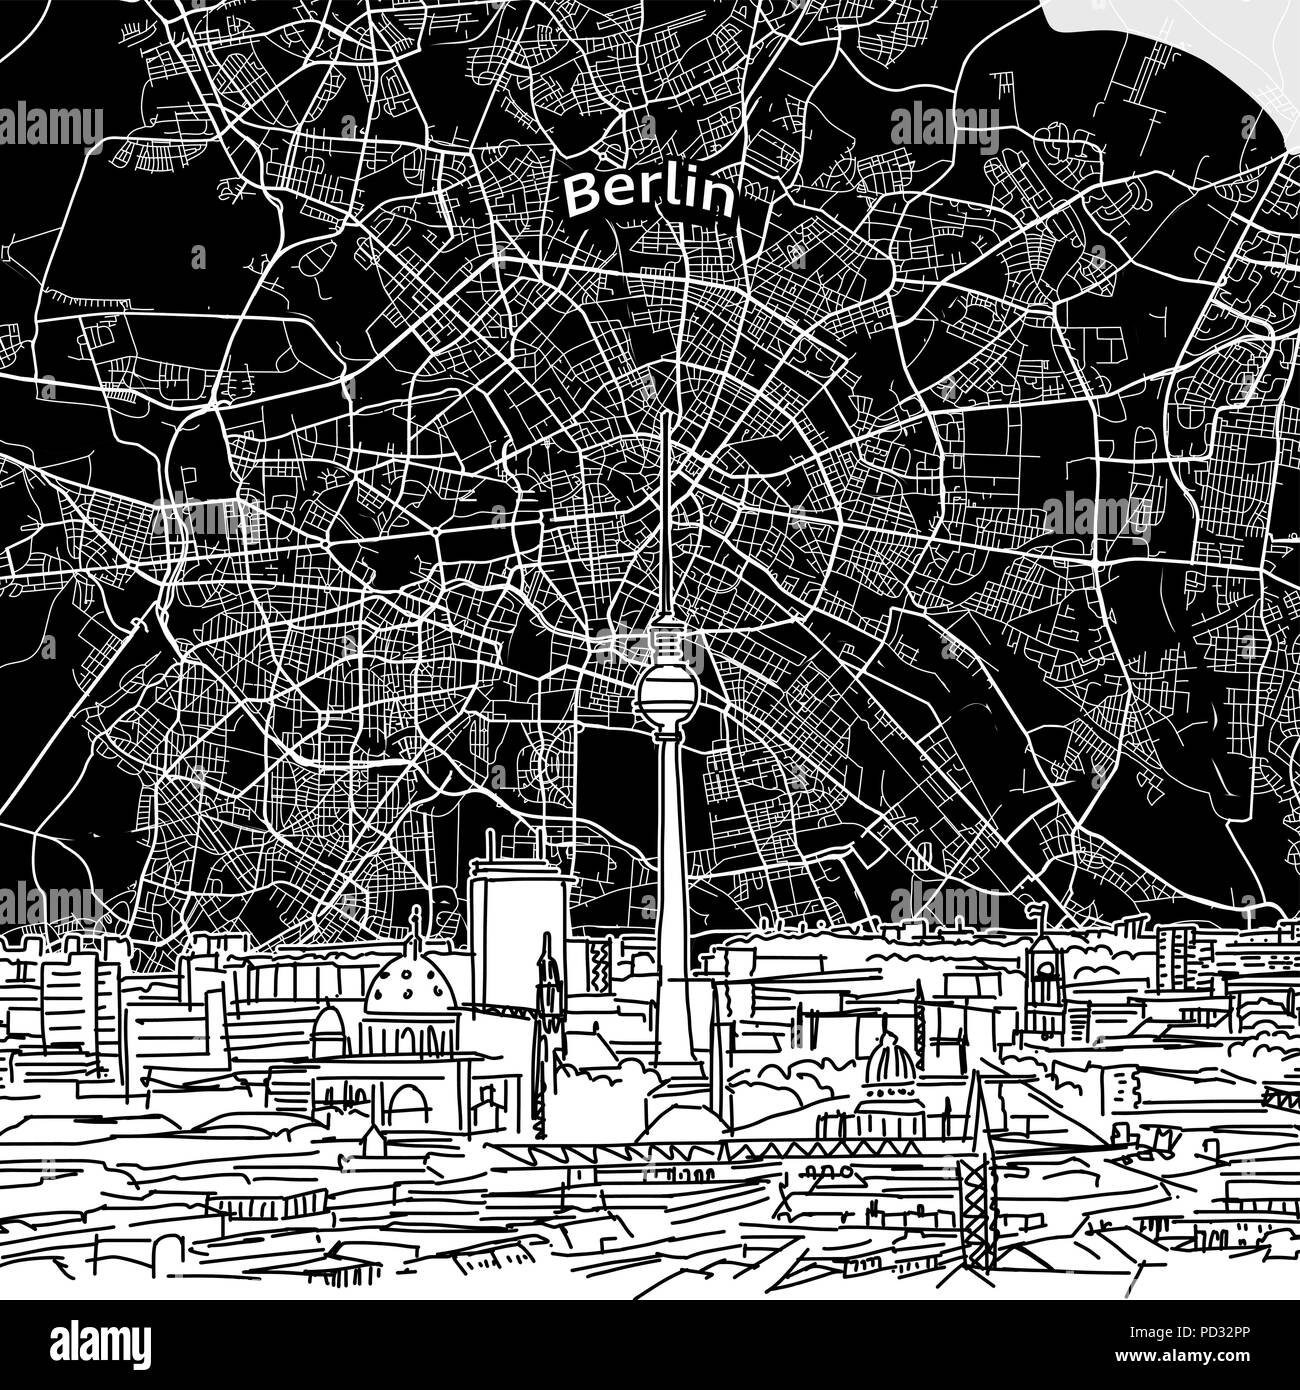 Vektor Zeichnung der Berliner Skyline mit Karte. Deutschland reisen Sehenswürdigkeit. Schwarze und weiße Abdeckung und Hintergrund Konzept. Stock Vektor